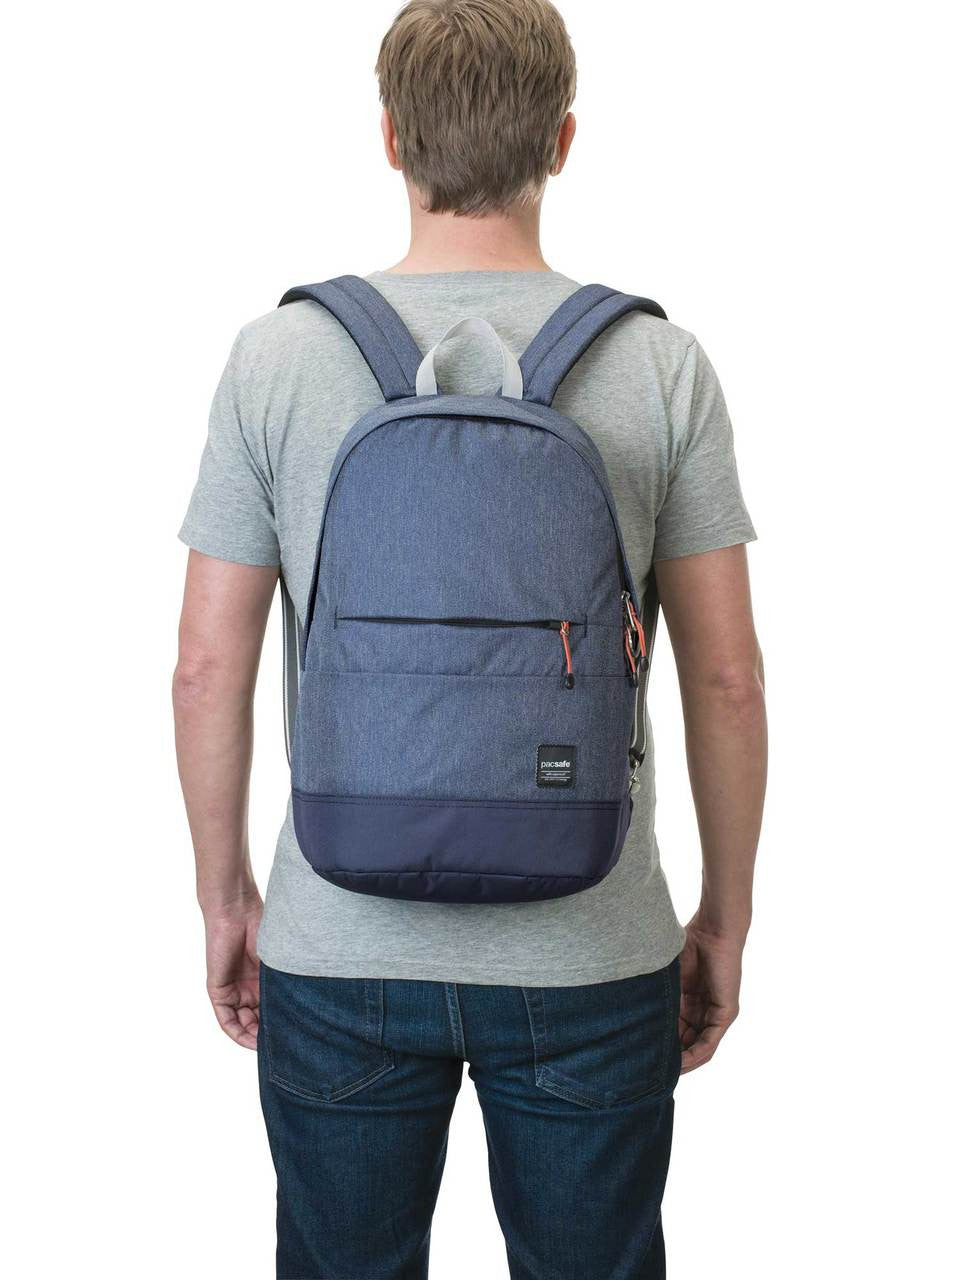 Slingsafe LX300 backpack, denim, model